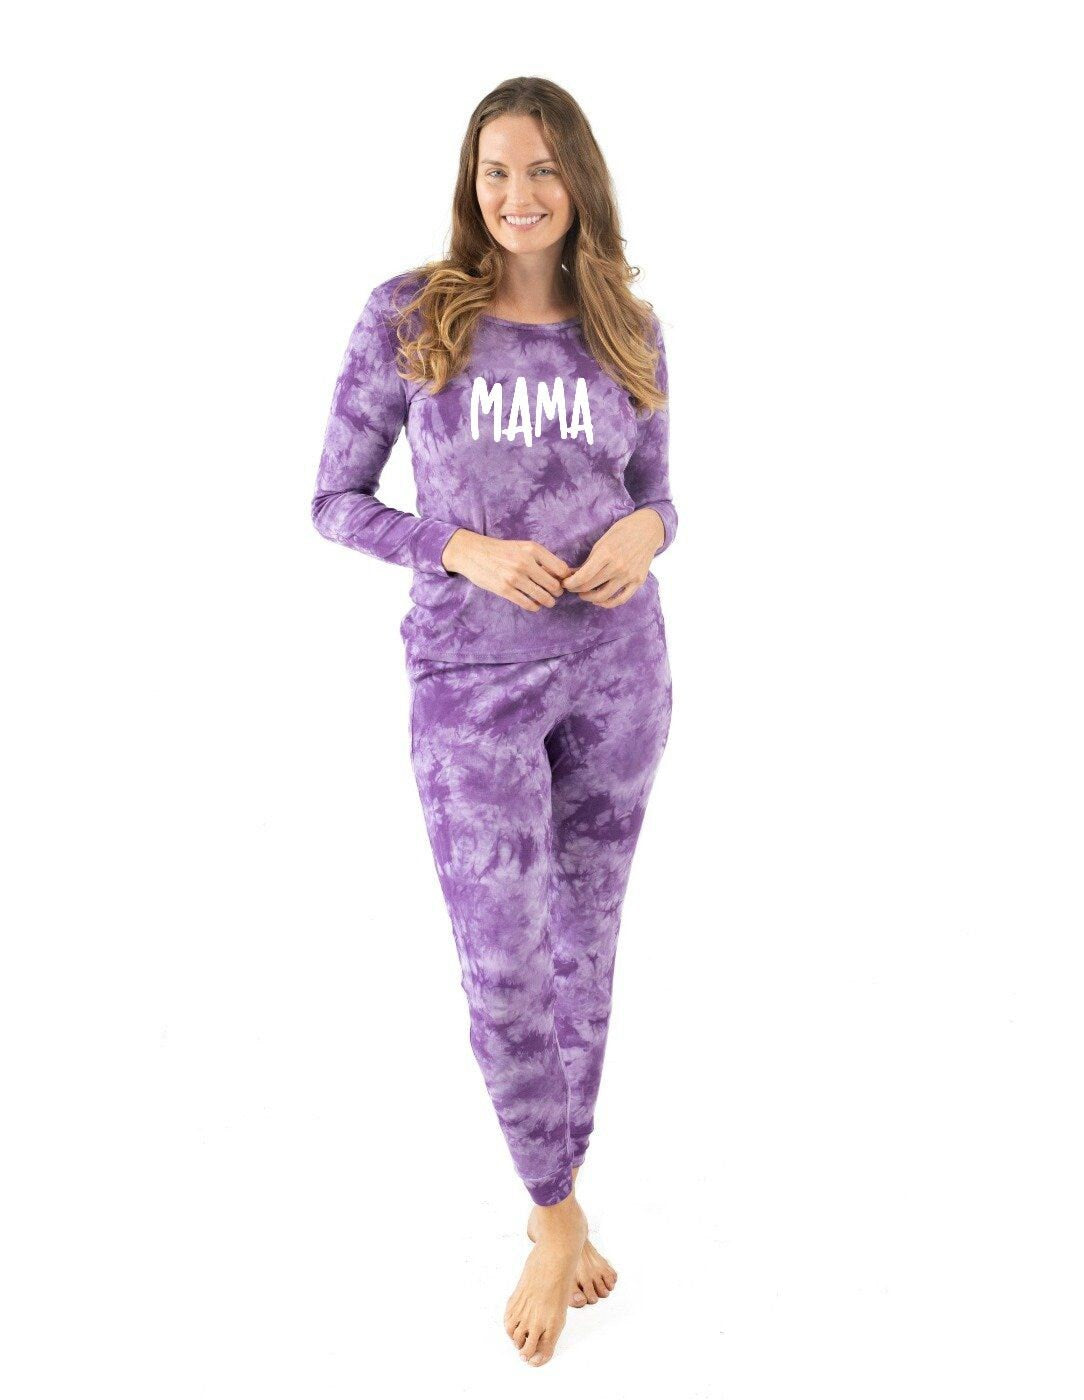 Personalized Tie Dye Pajamas, Custom Family Pajamas, Personalized Kids Pajamas, Personalized Adult Pajamas, Custom Text Pajamas